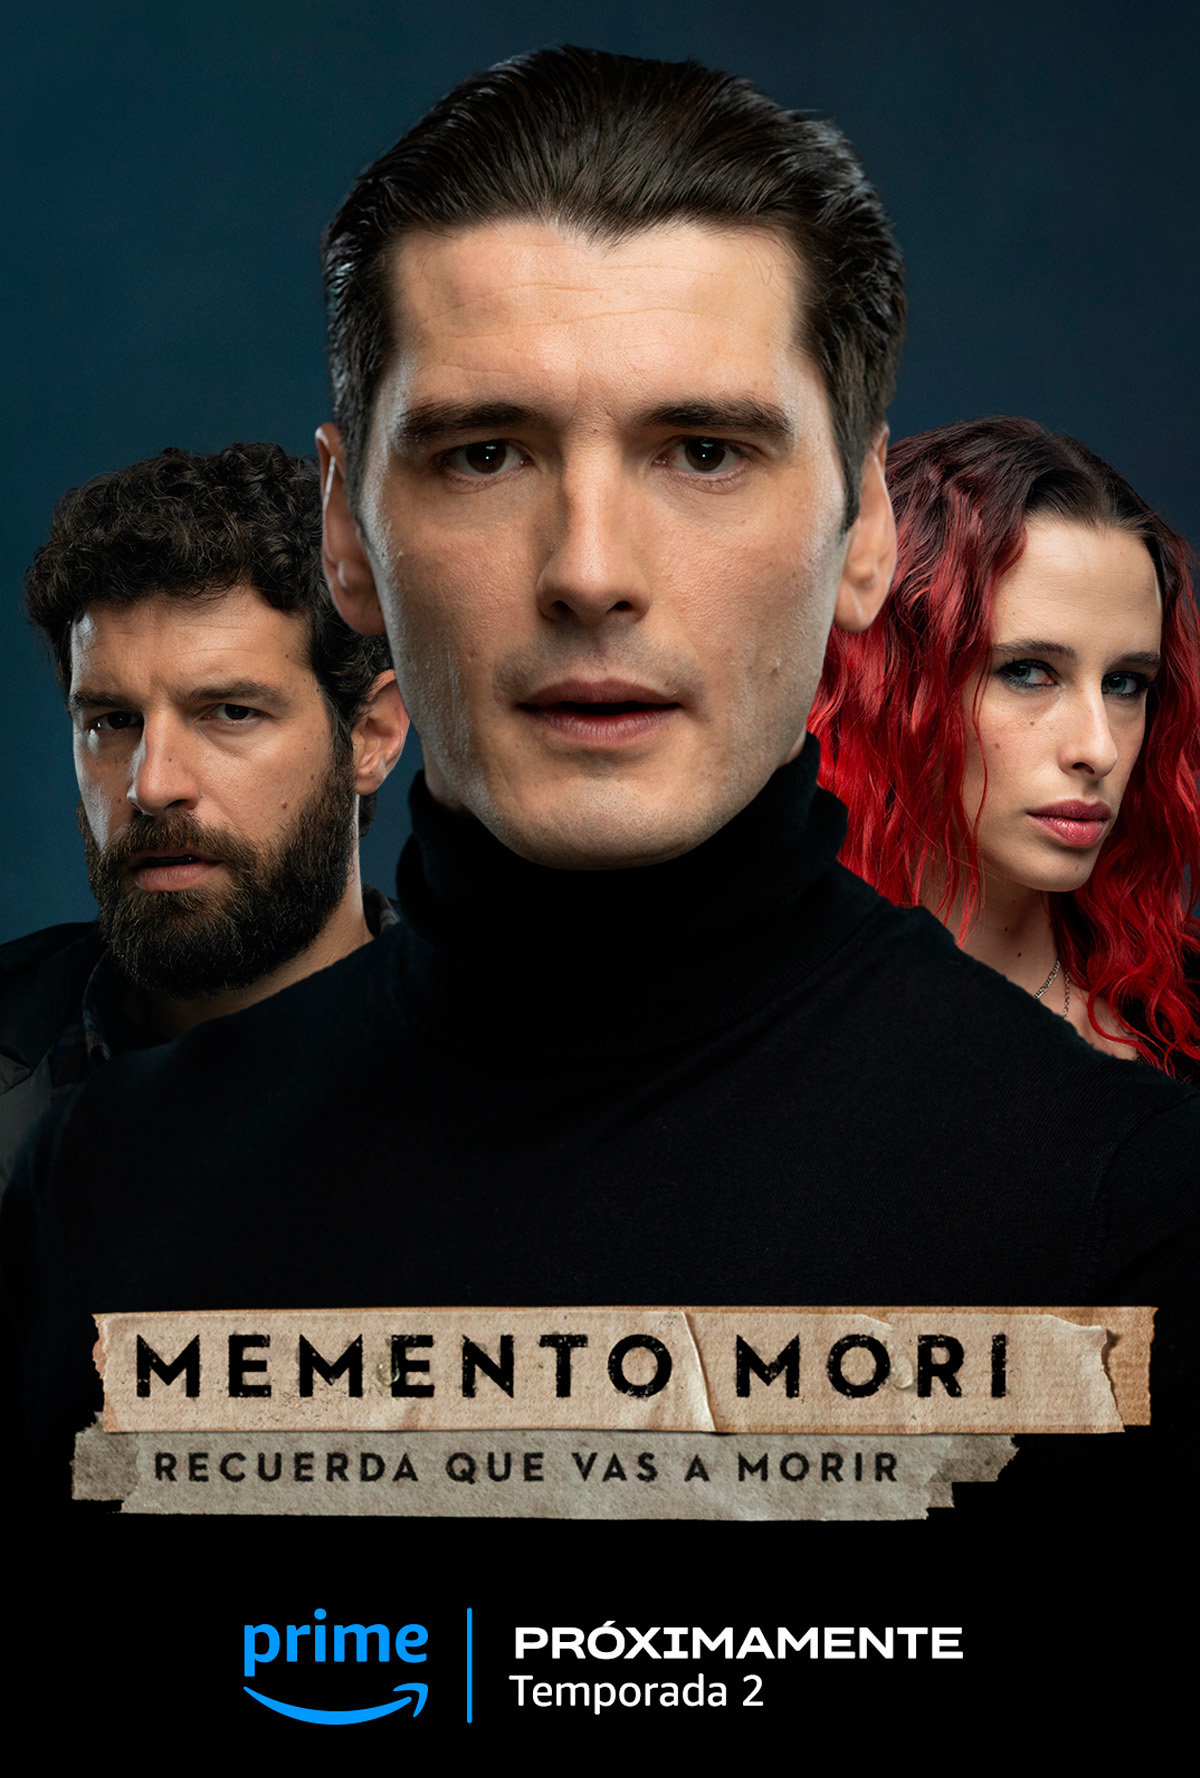 Prime Video confirms second season of crime thriller Memento Mori